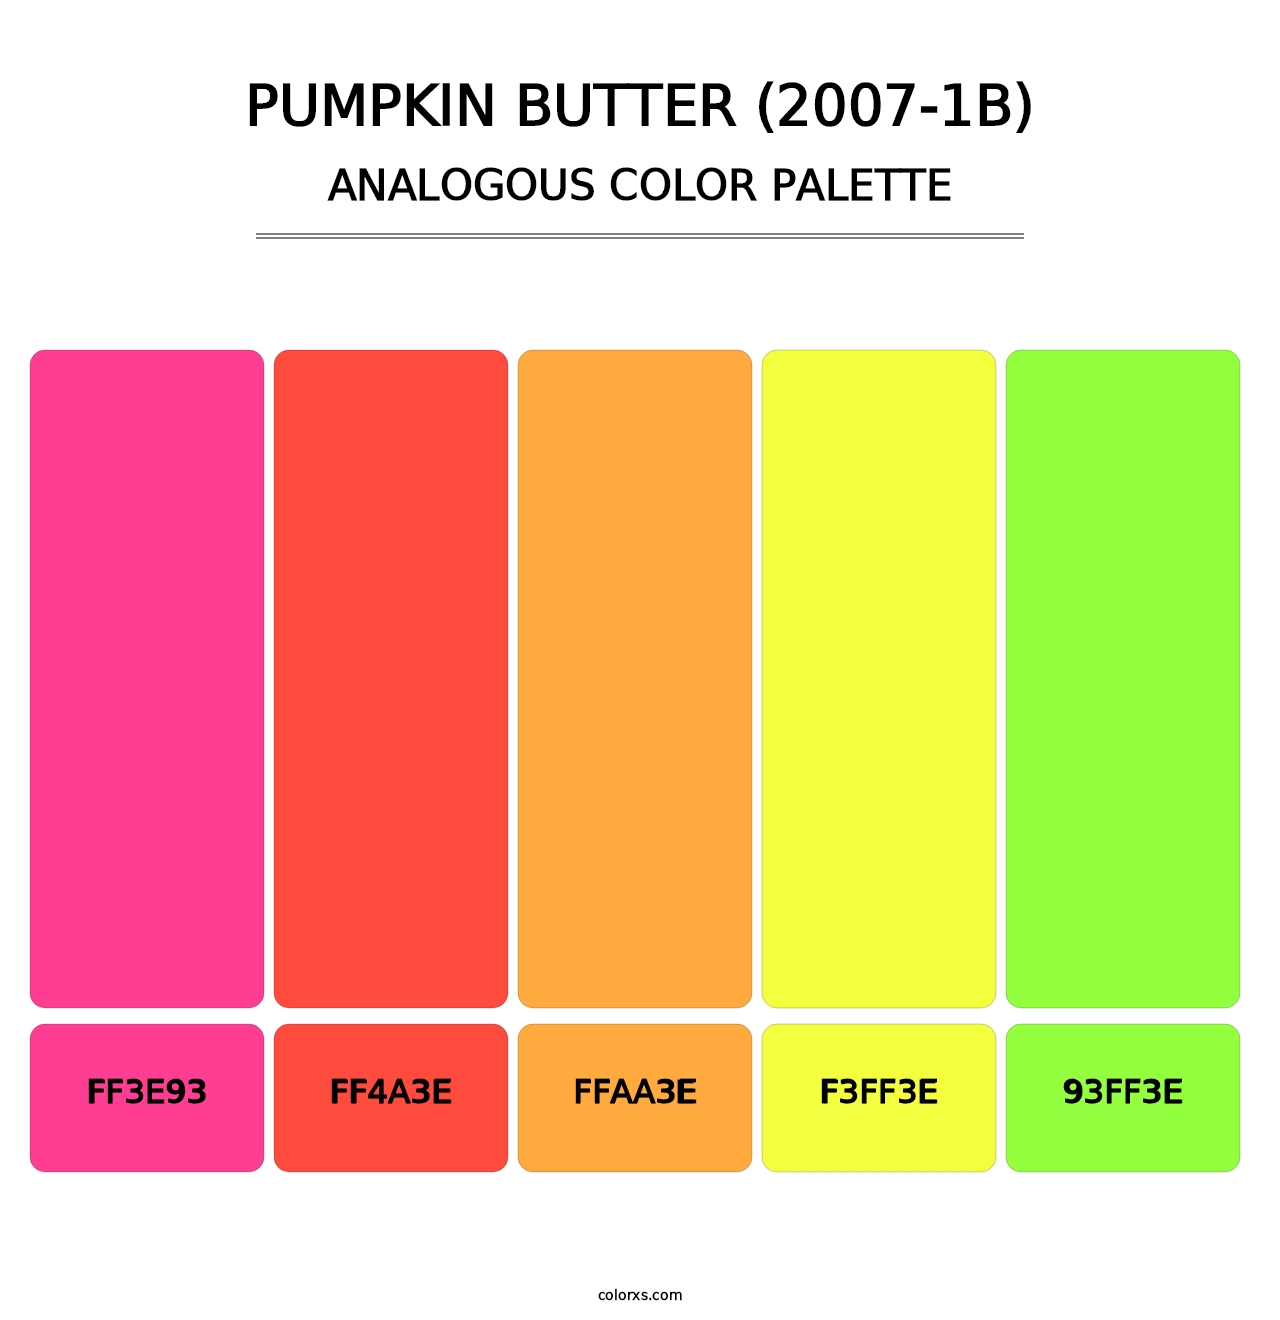 Pumpkin Butter (2007-1B) - Analogous Color Palette